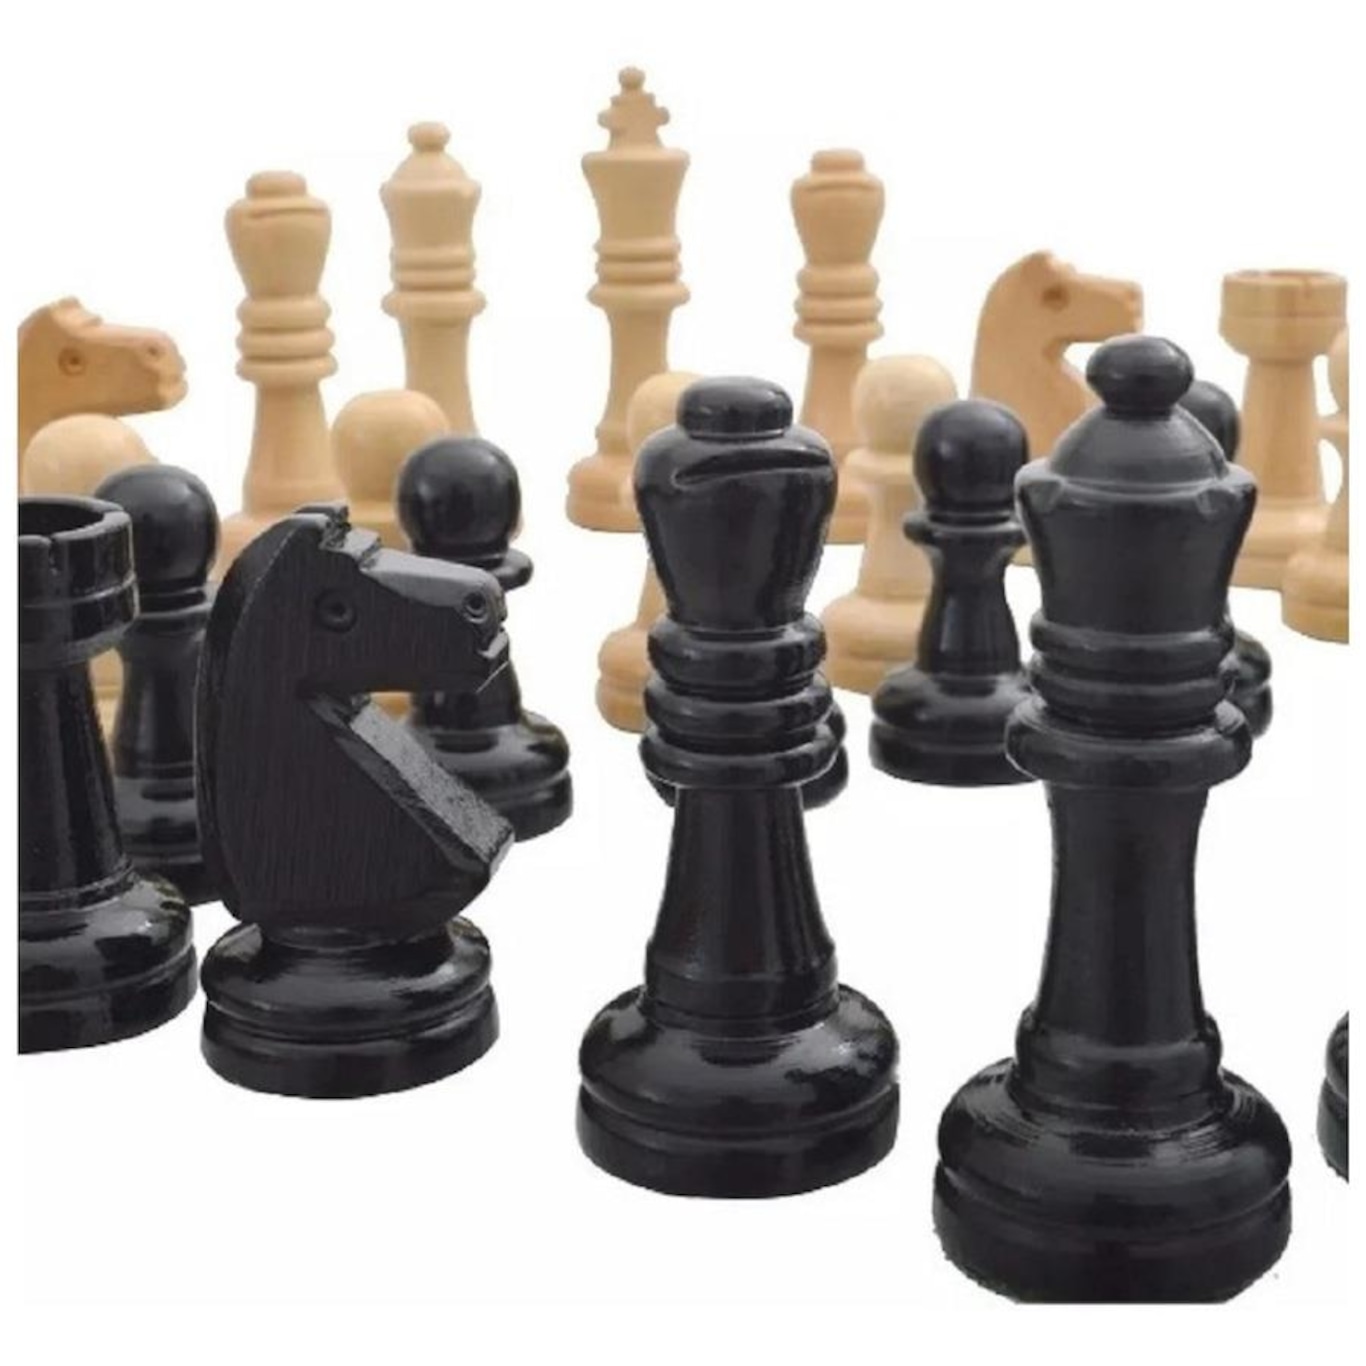 Jogo de xadrez tabuleiro em madeira casas 5x5 pecas rei 10cm